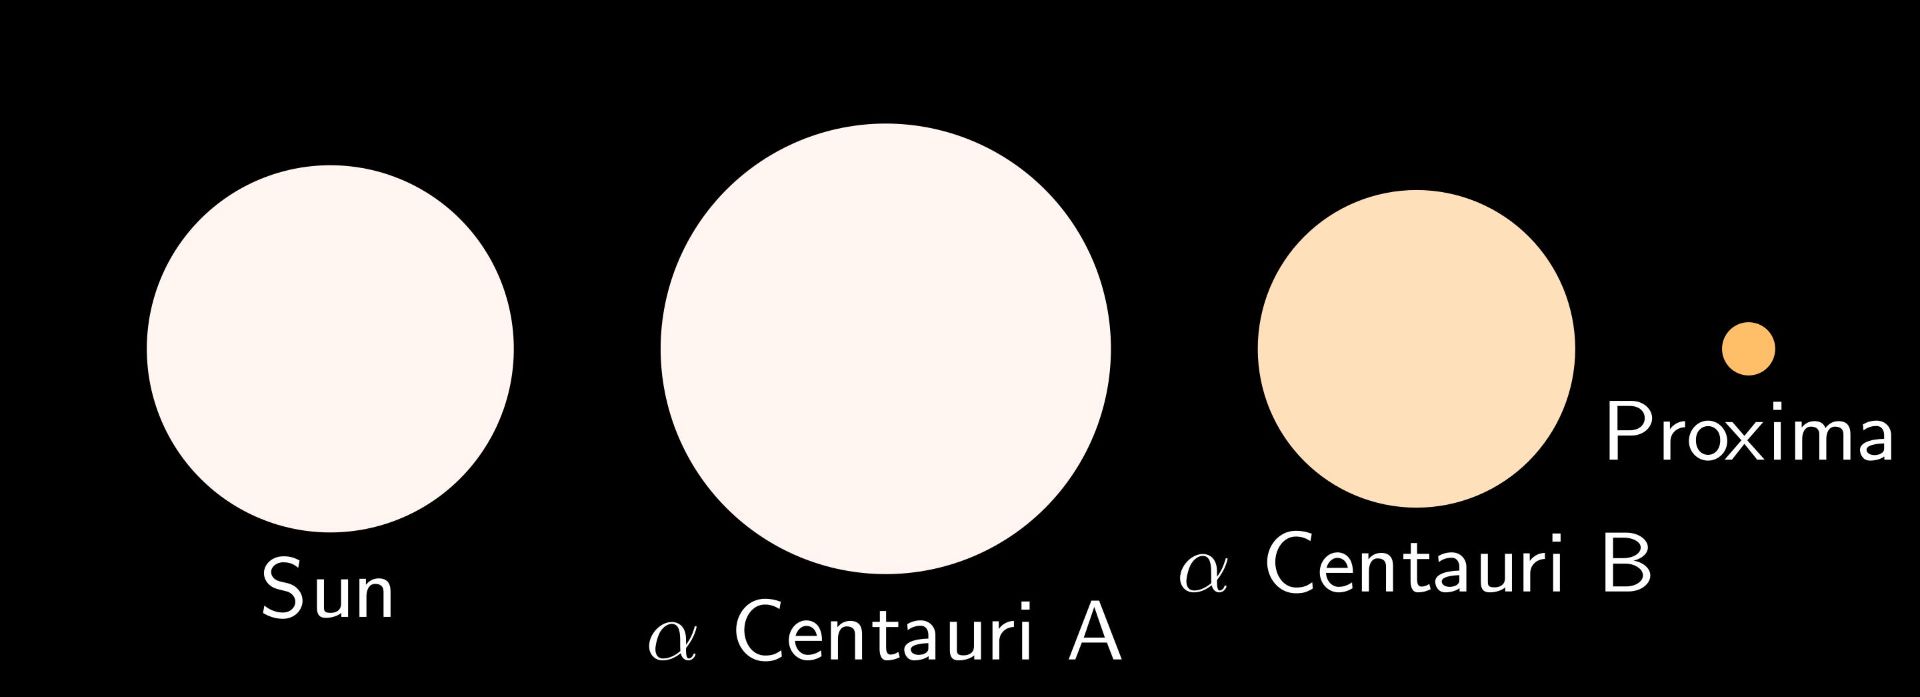 مقایسه اندازه و رنگ ستارگان منظومه آلفا قنطورس با خورشید